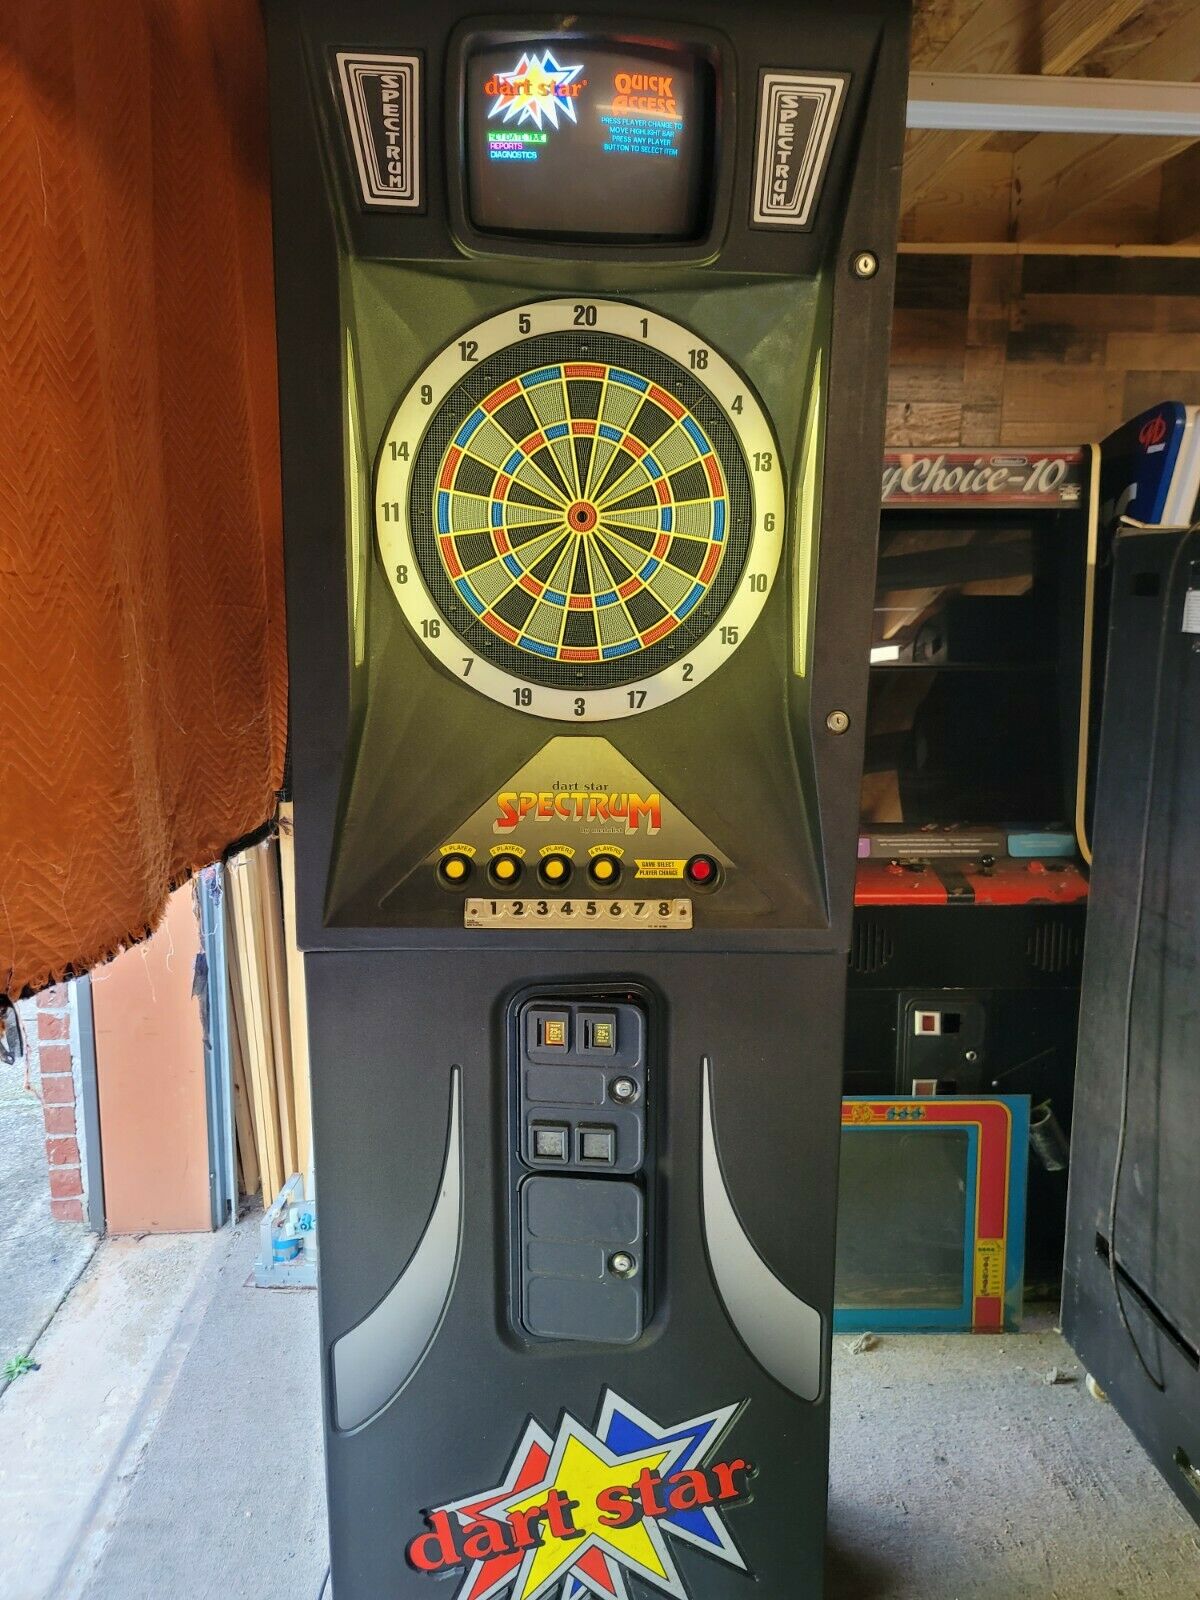 Dart Star Dart Board Arcade Game, Atlanta, (needs Repair)